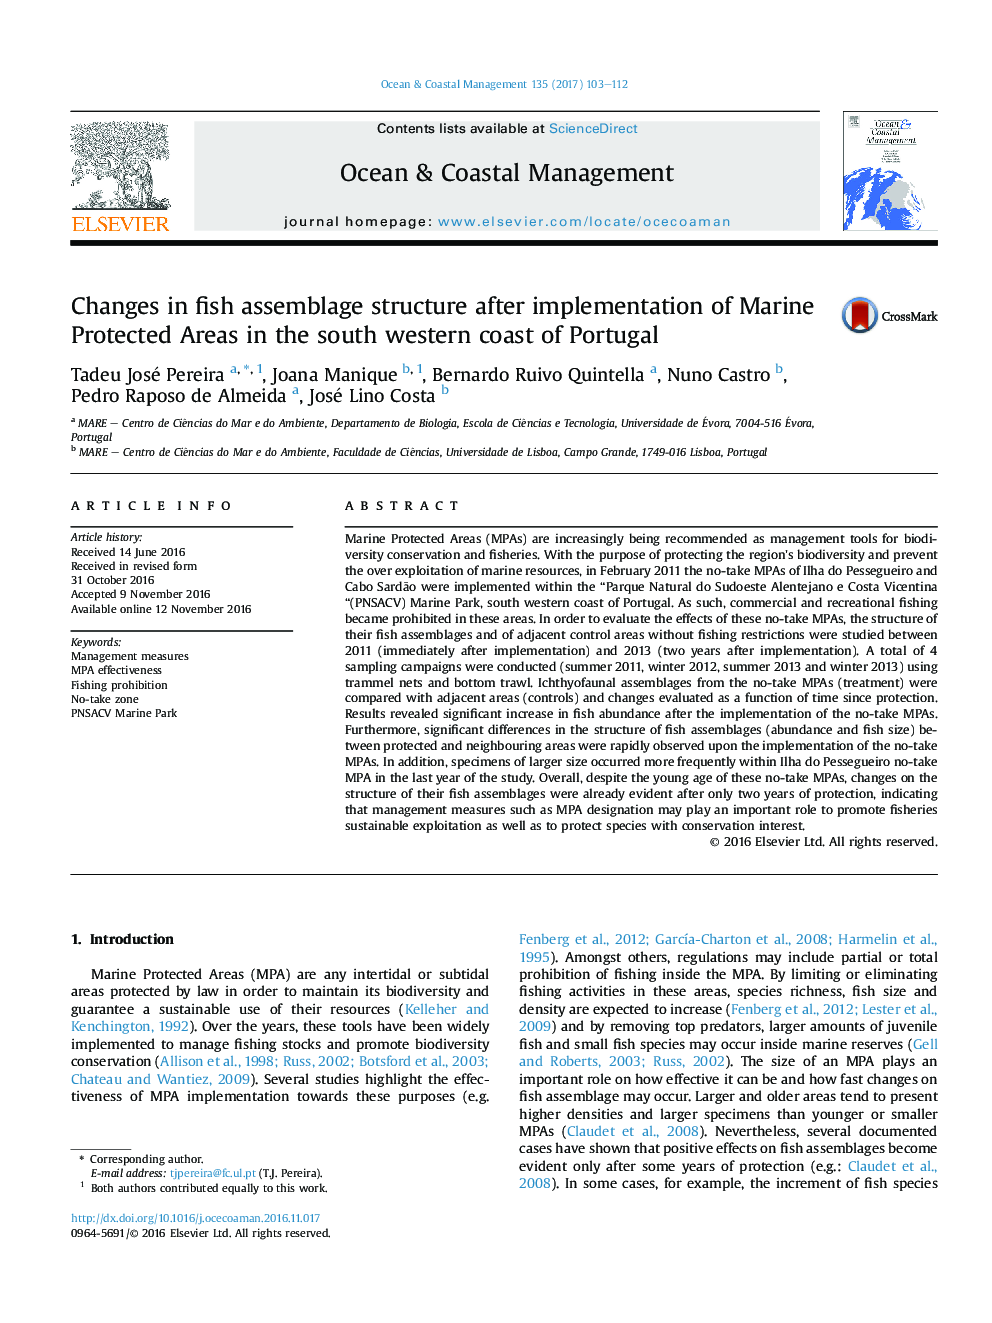 تغییرات ساختار مونتاژ ماهی پس از اجرای مناطق حفاظت شده دریایی در ساحل جنوبی جنوب پرتغال 